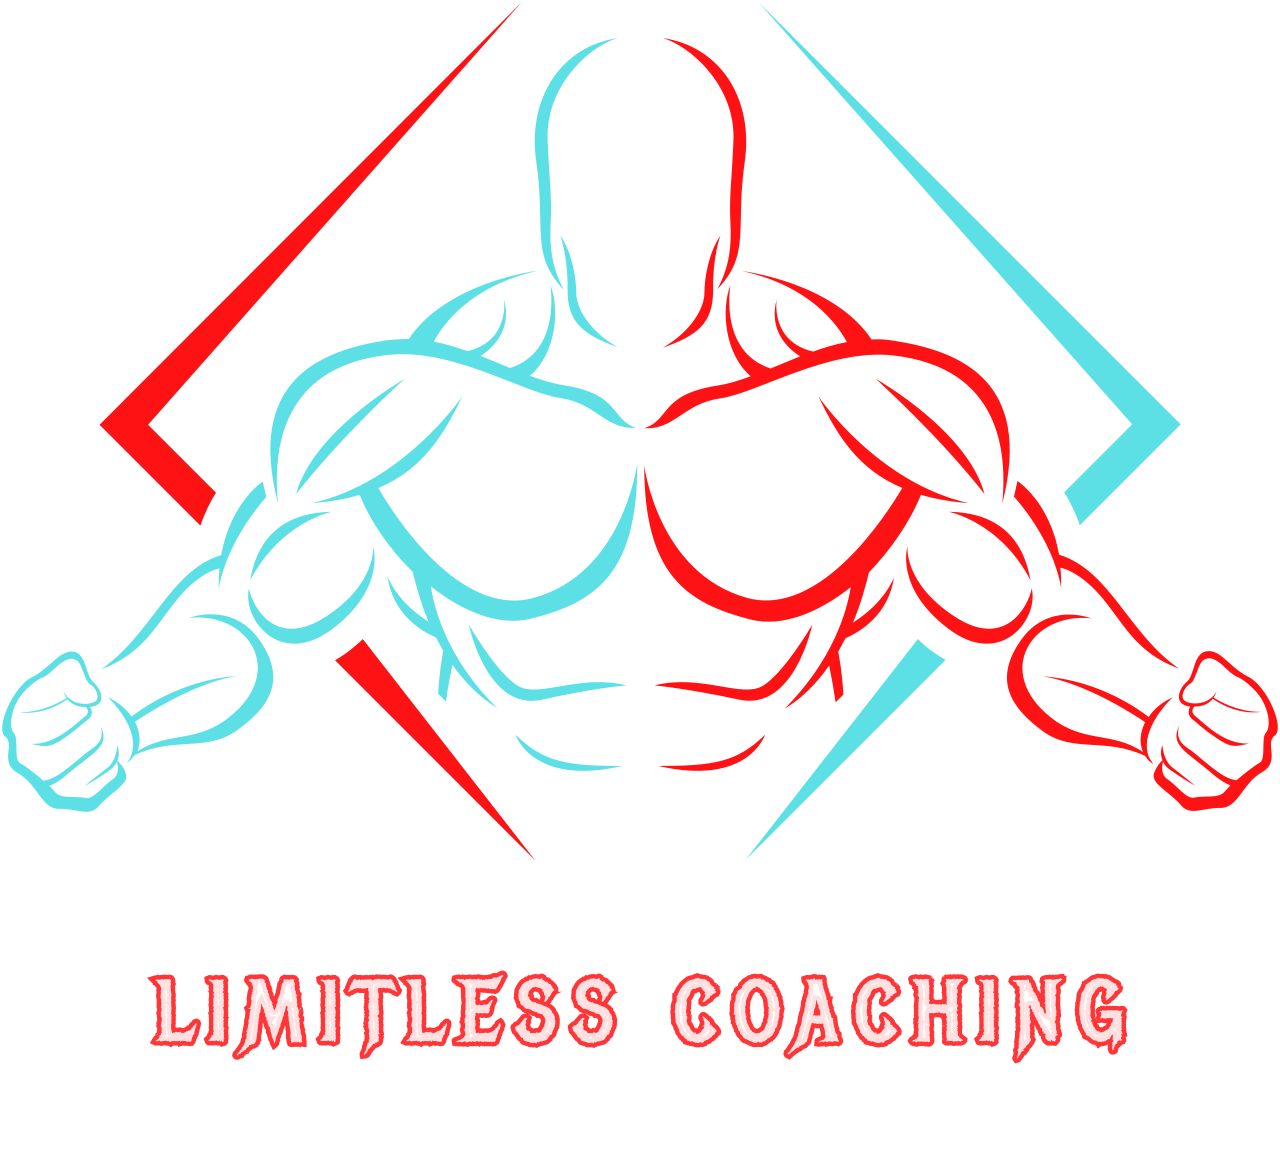  LIMITLESS COACHING 
's logo